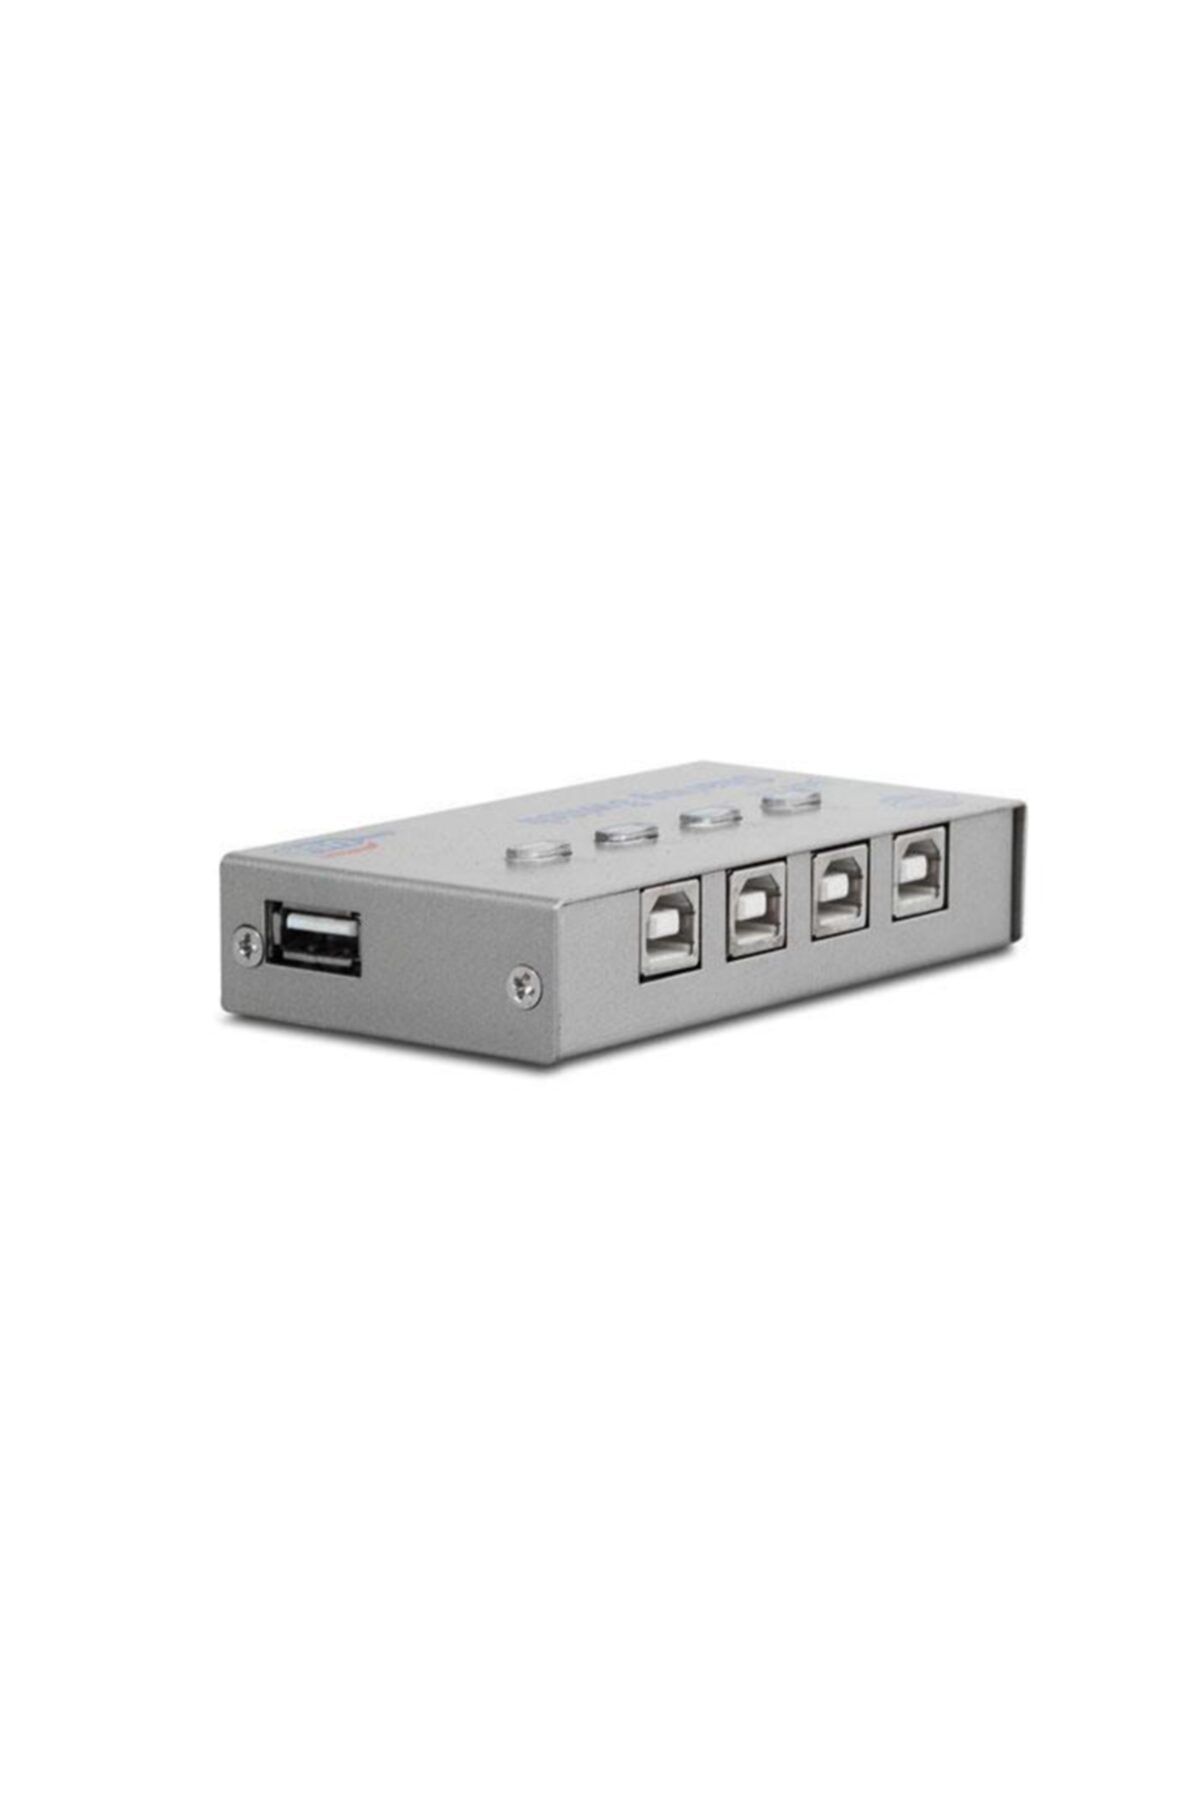 S-Link Sl-usw4 4 Port Yazıcı Çoklayıcı Switch (1 Yazıcı 4 Bilgisayar)